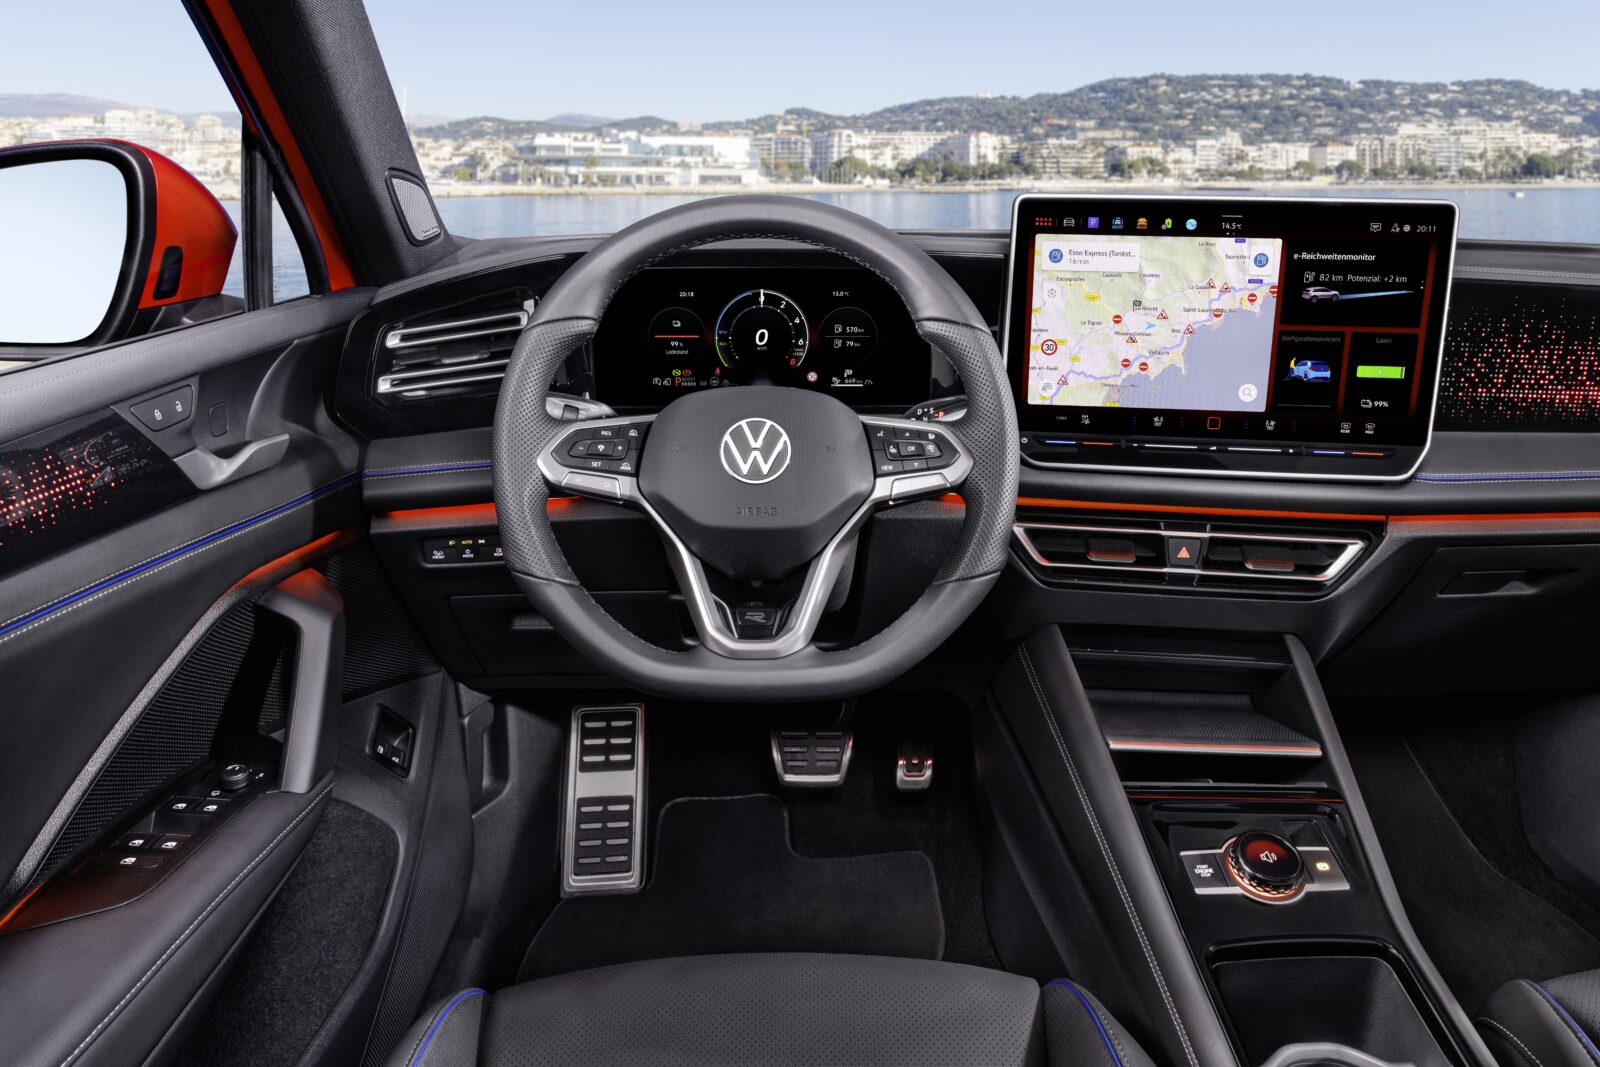 Volkswagen Tiguan test met nieuw MIB4 infotainmentsysteem